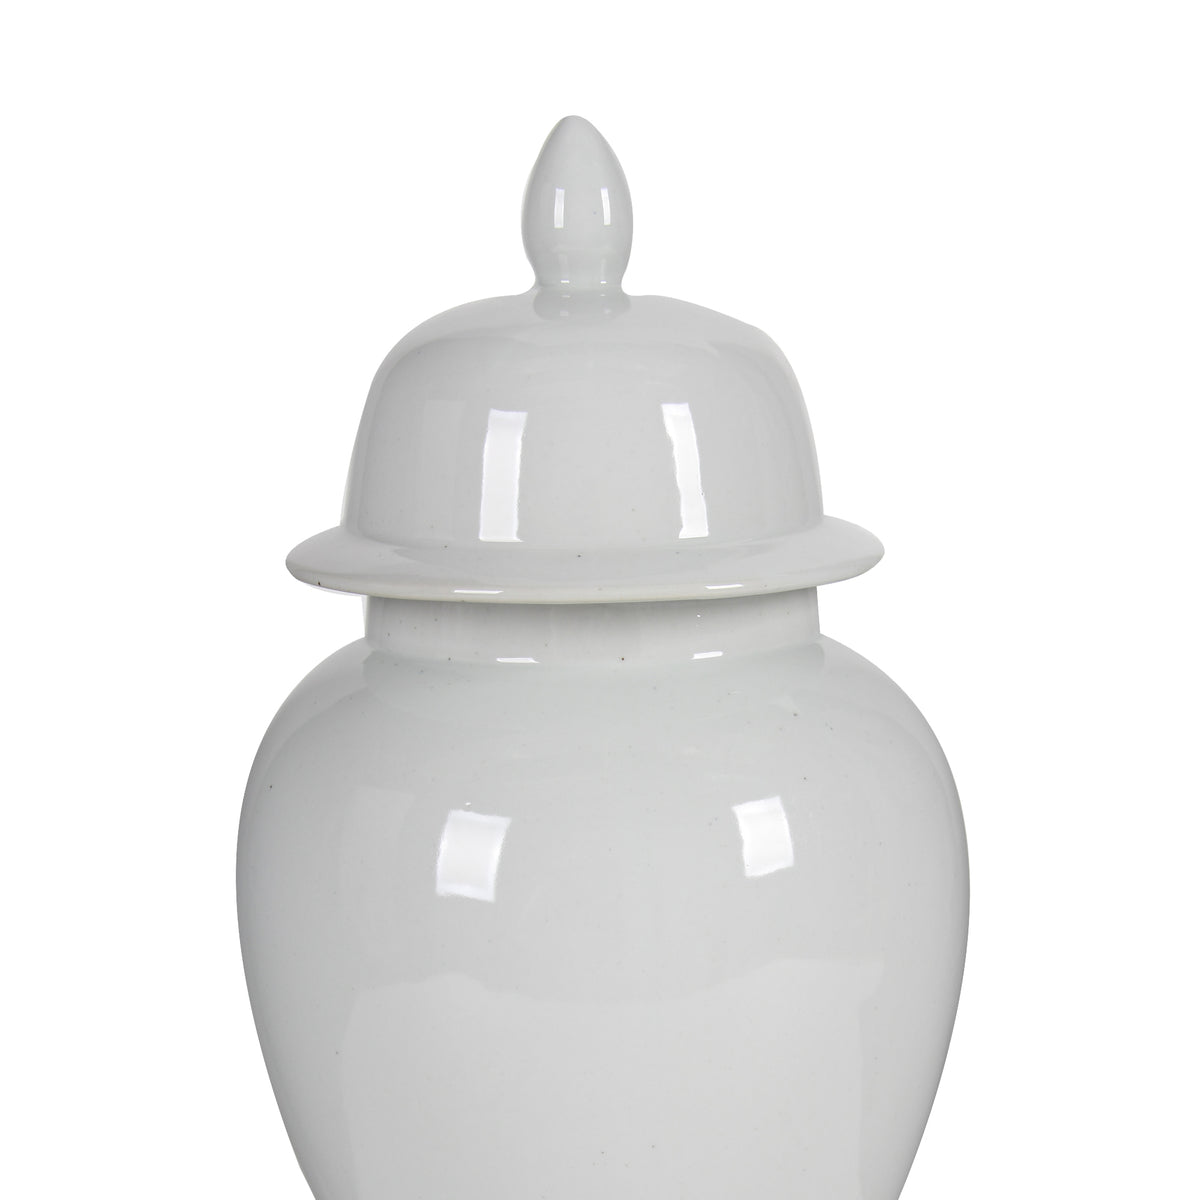 Kipp Decorative Porcelain Ginger Jar with Lidded Top, Large, White - BM165657